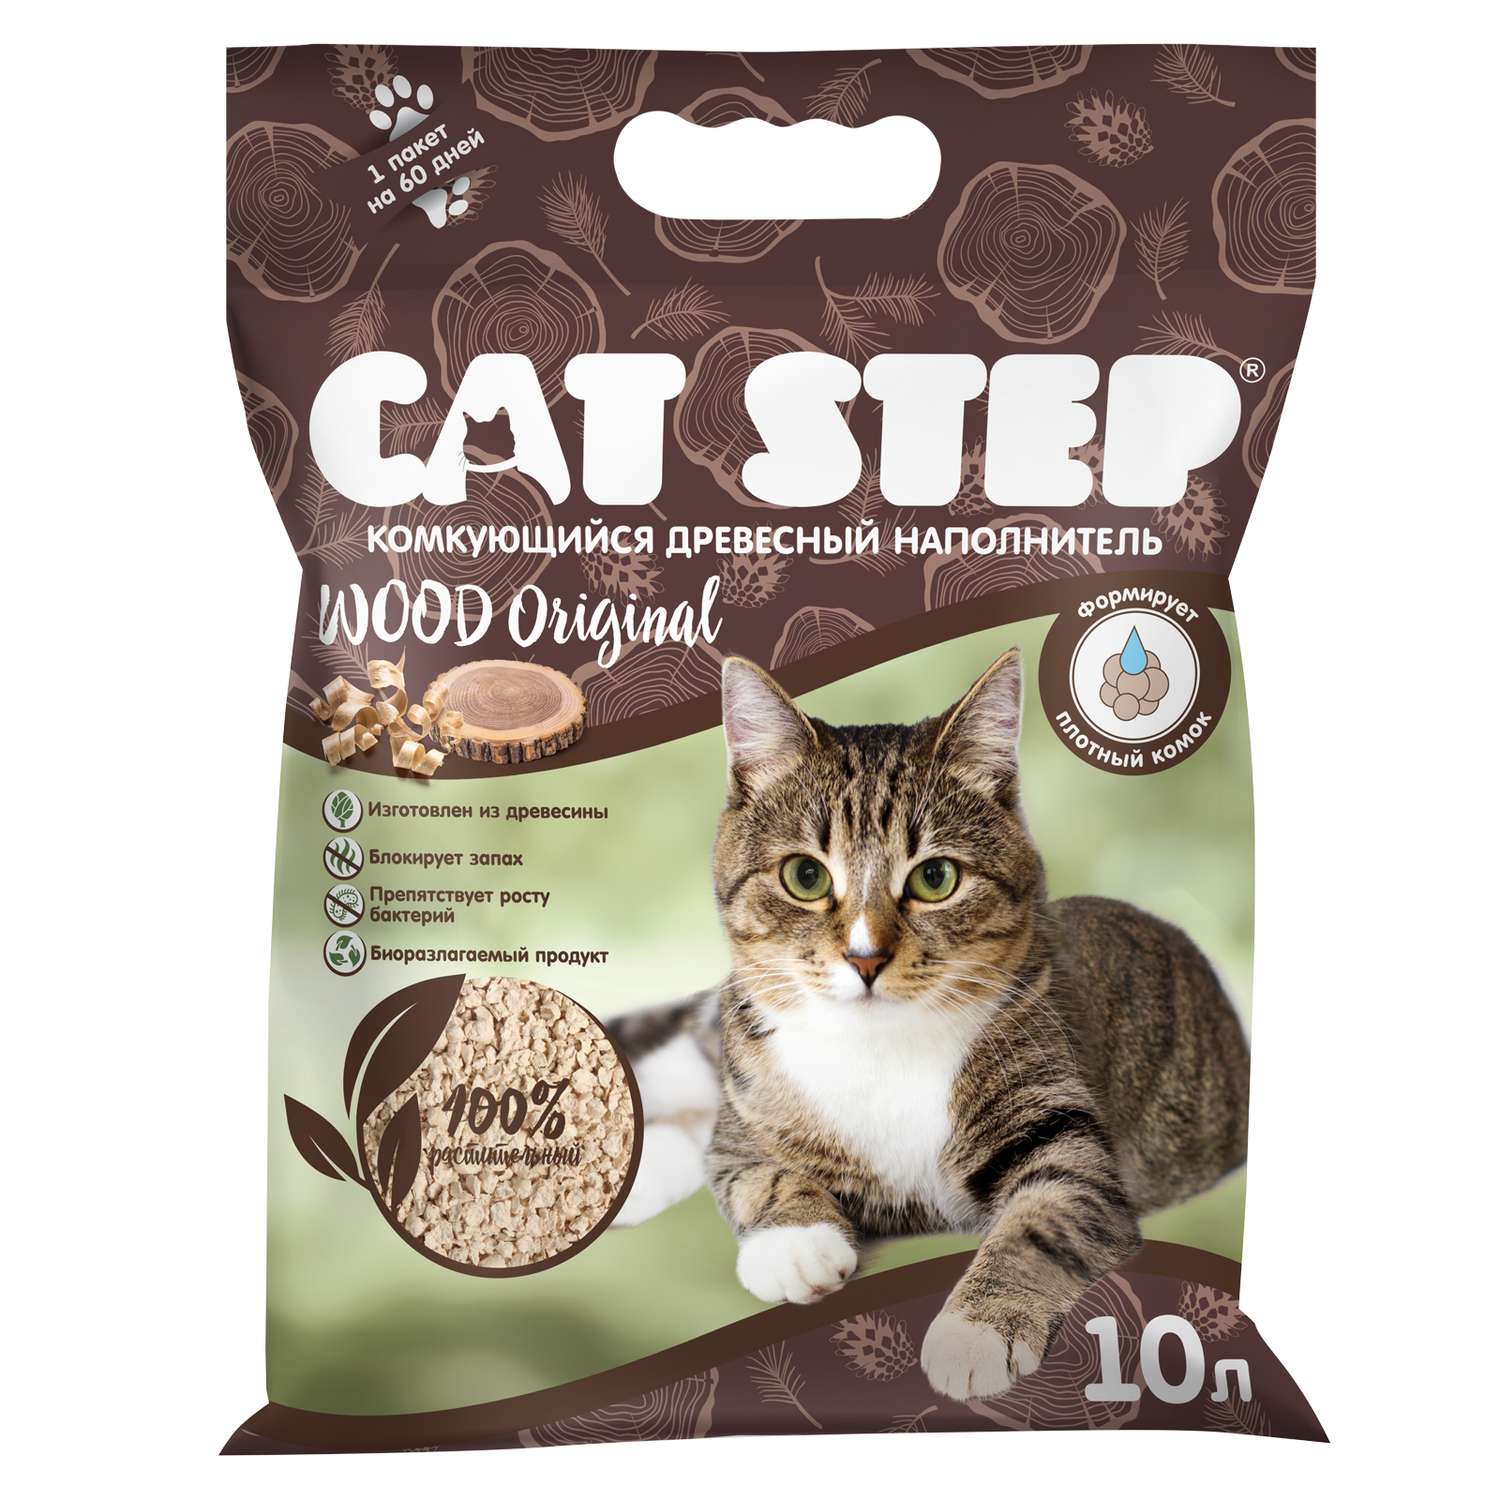 Наполнитель для кошек Cat Step Wood Original комкующийся растительный 10л - фото 2